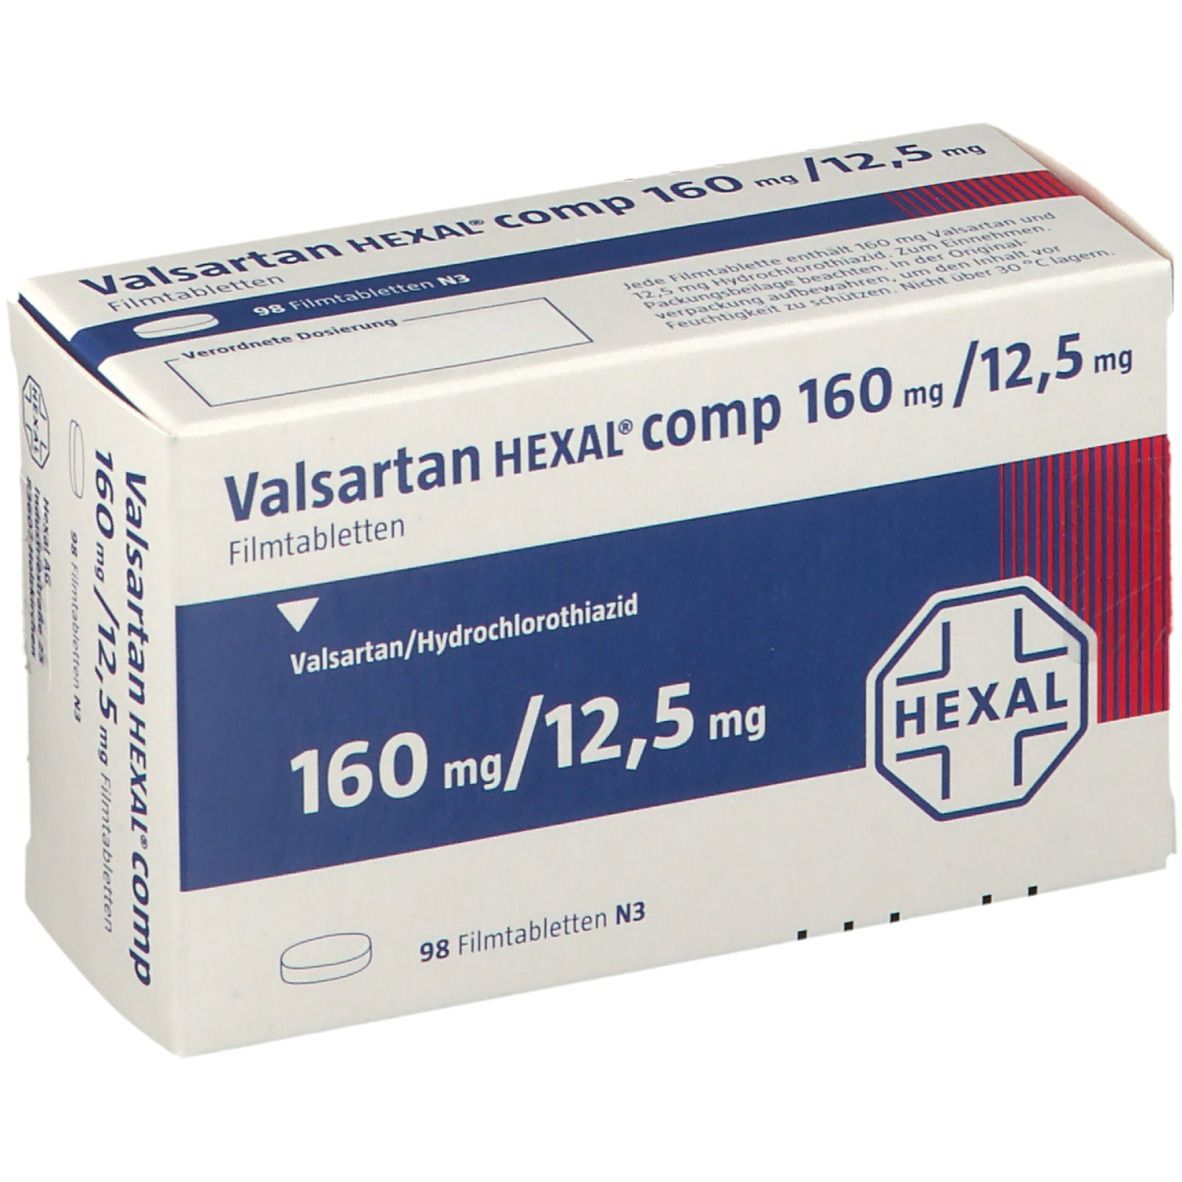 Valsartan HEXAL® comp 160 mg/12,5 mg